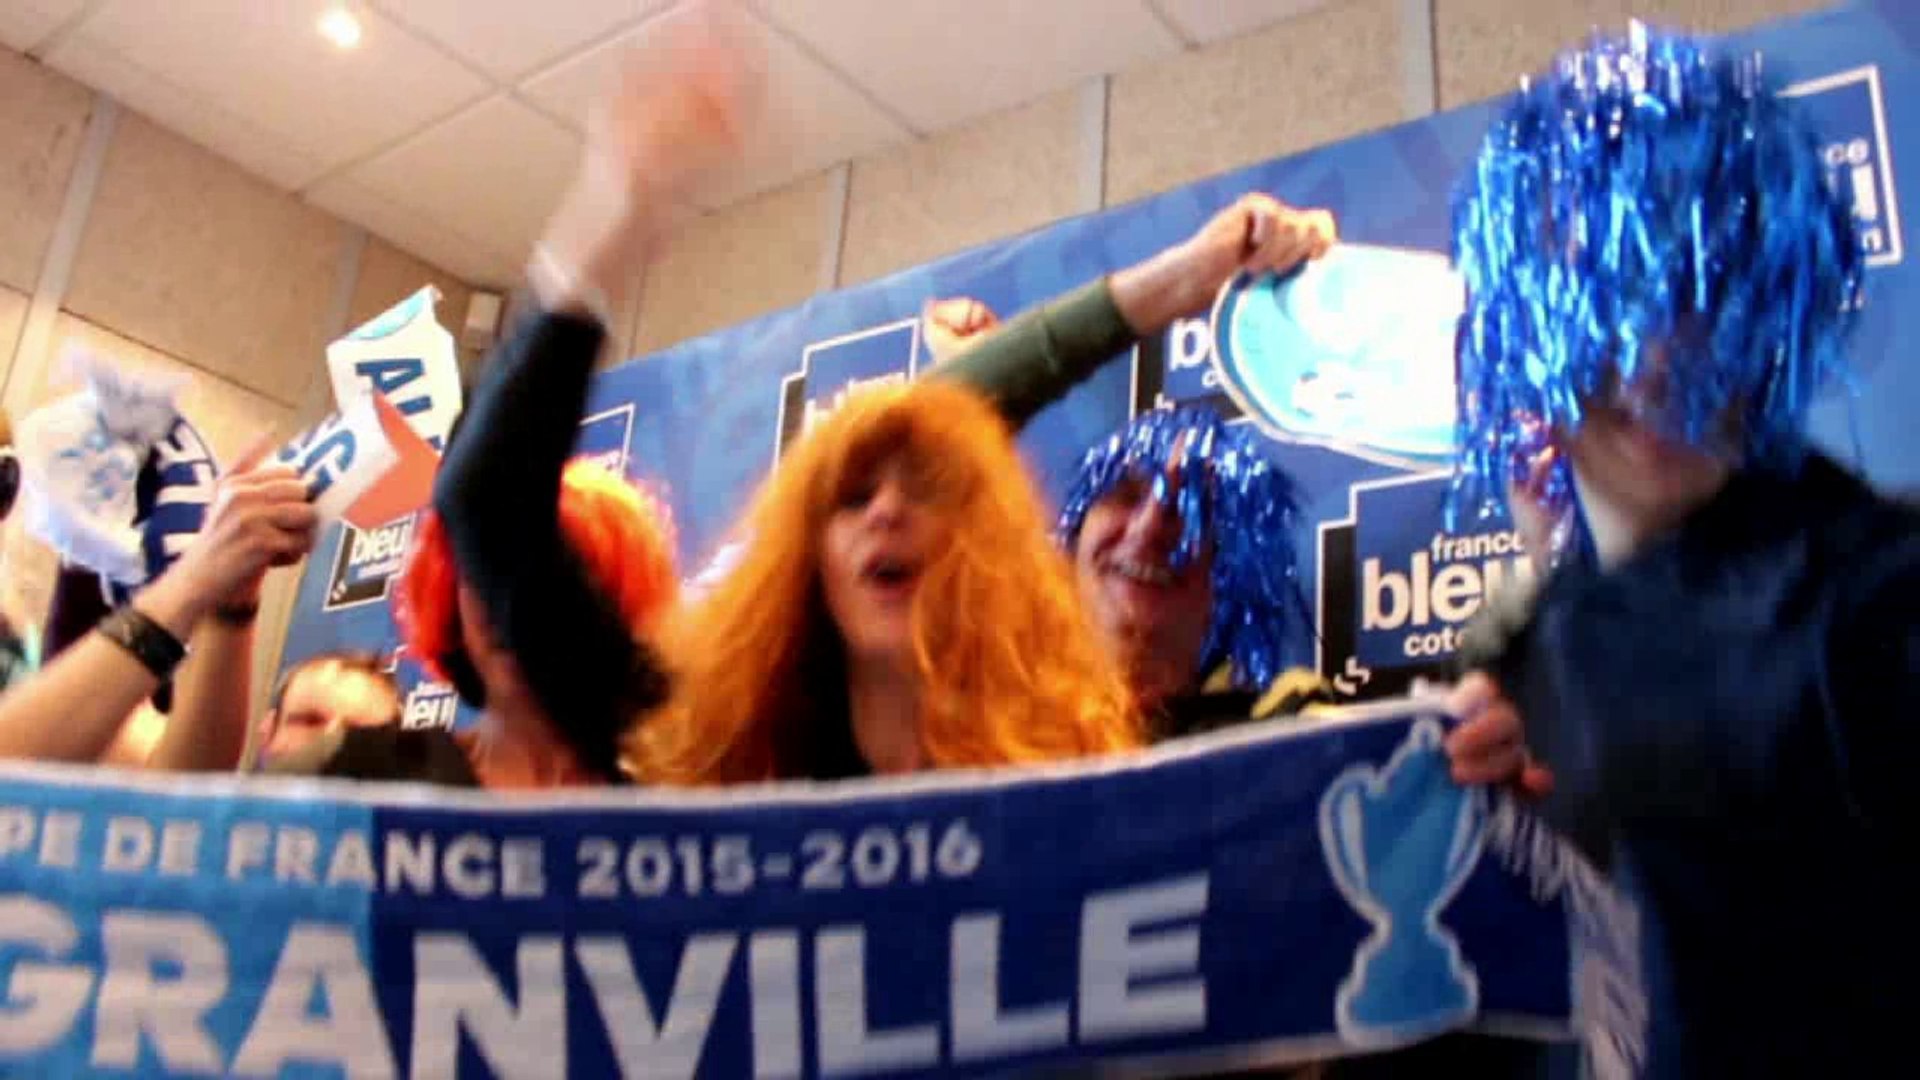 France Bleu Cotentin chante et danse pour l'US Granville ! - Vidéo  Dailymotion